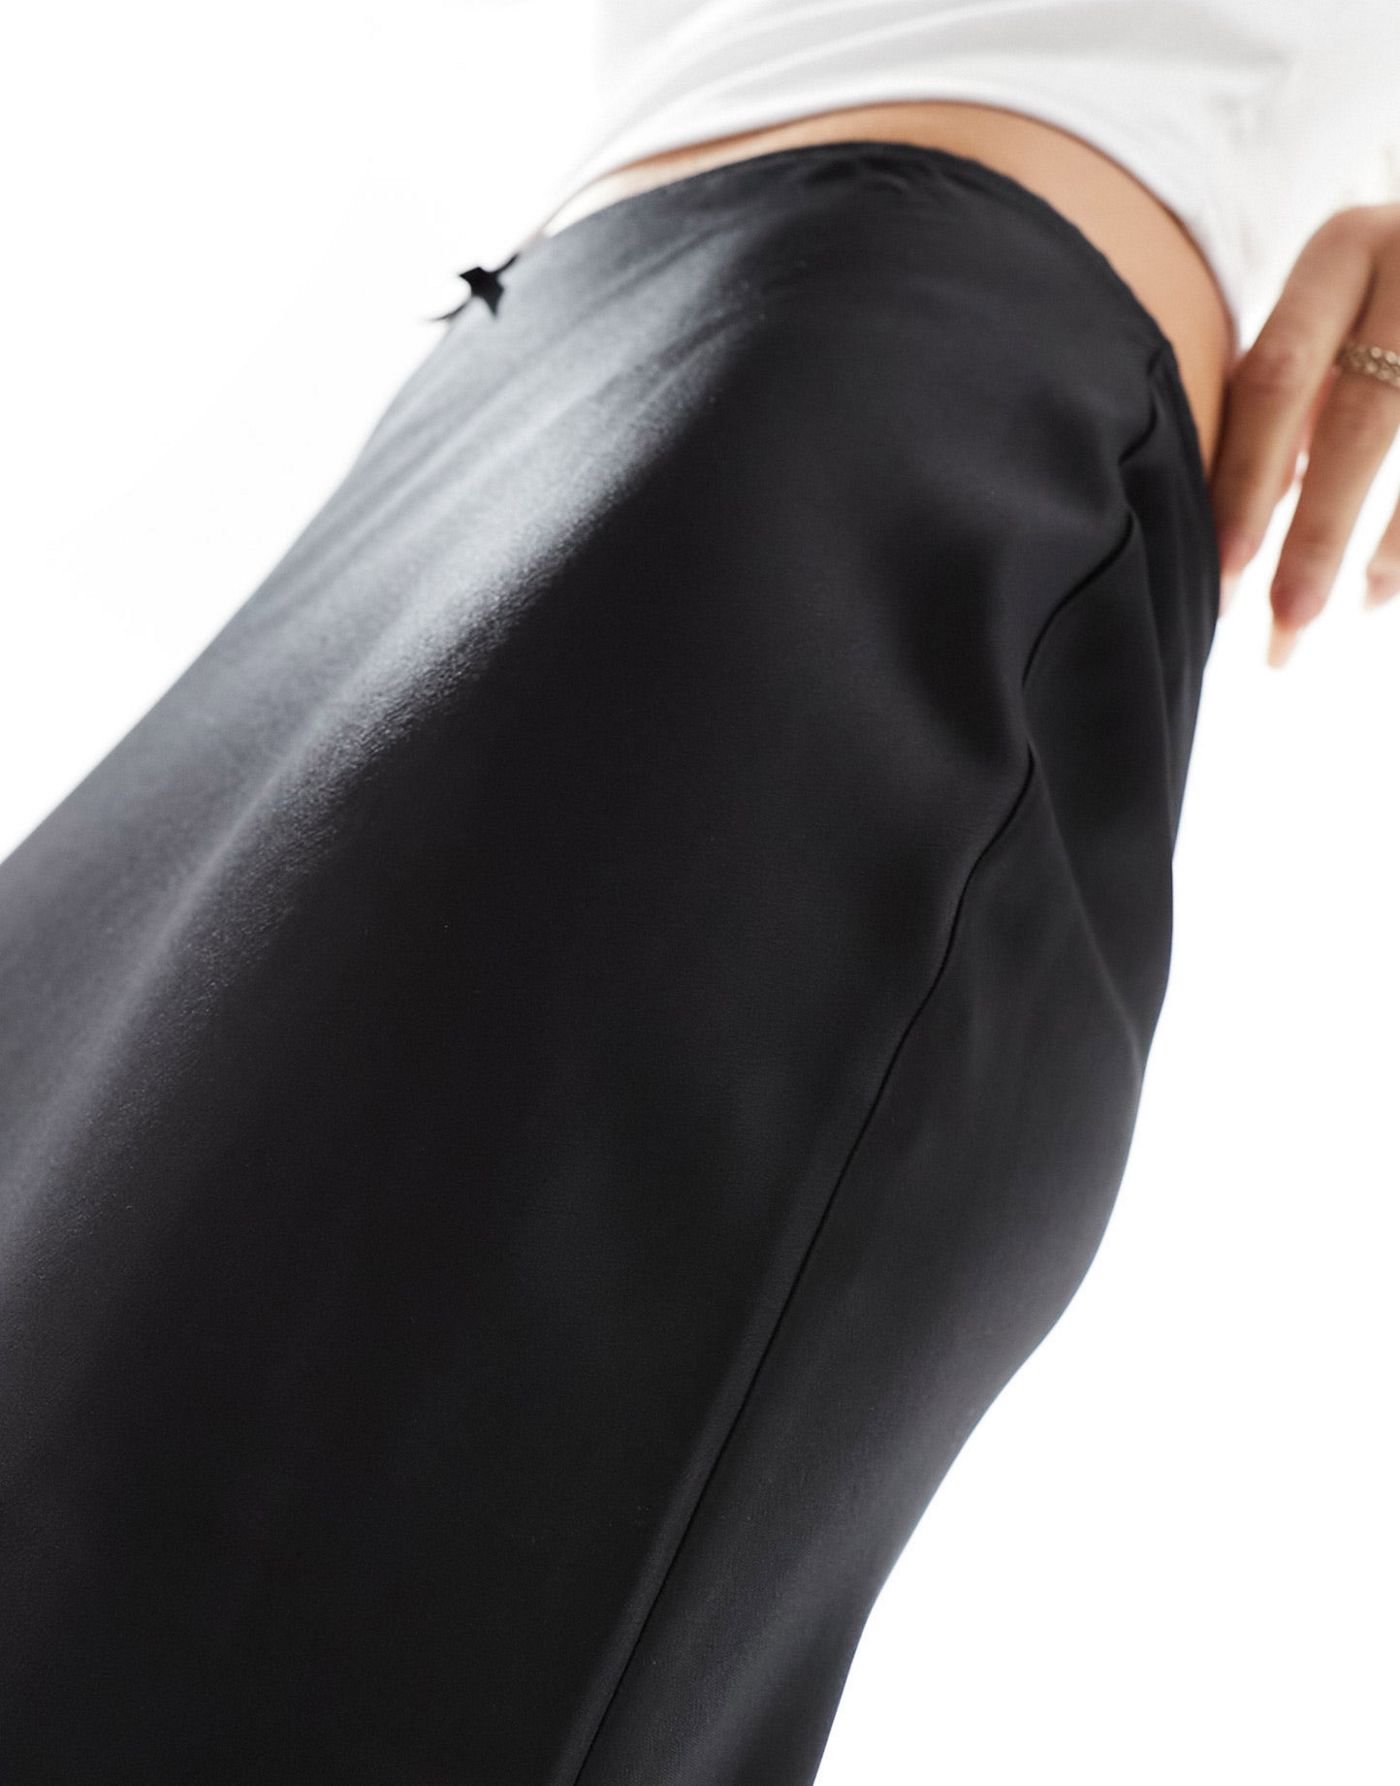 Miss selfridge Petite awkward length midi bias skirt in black 